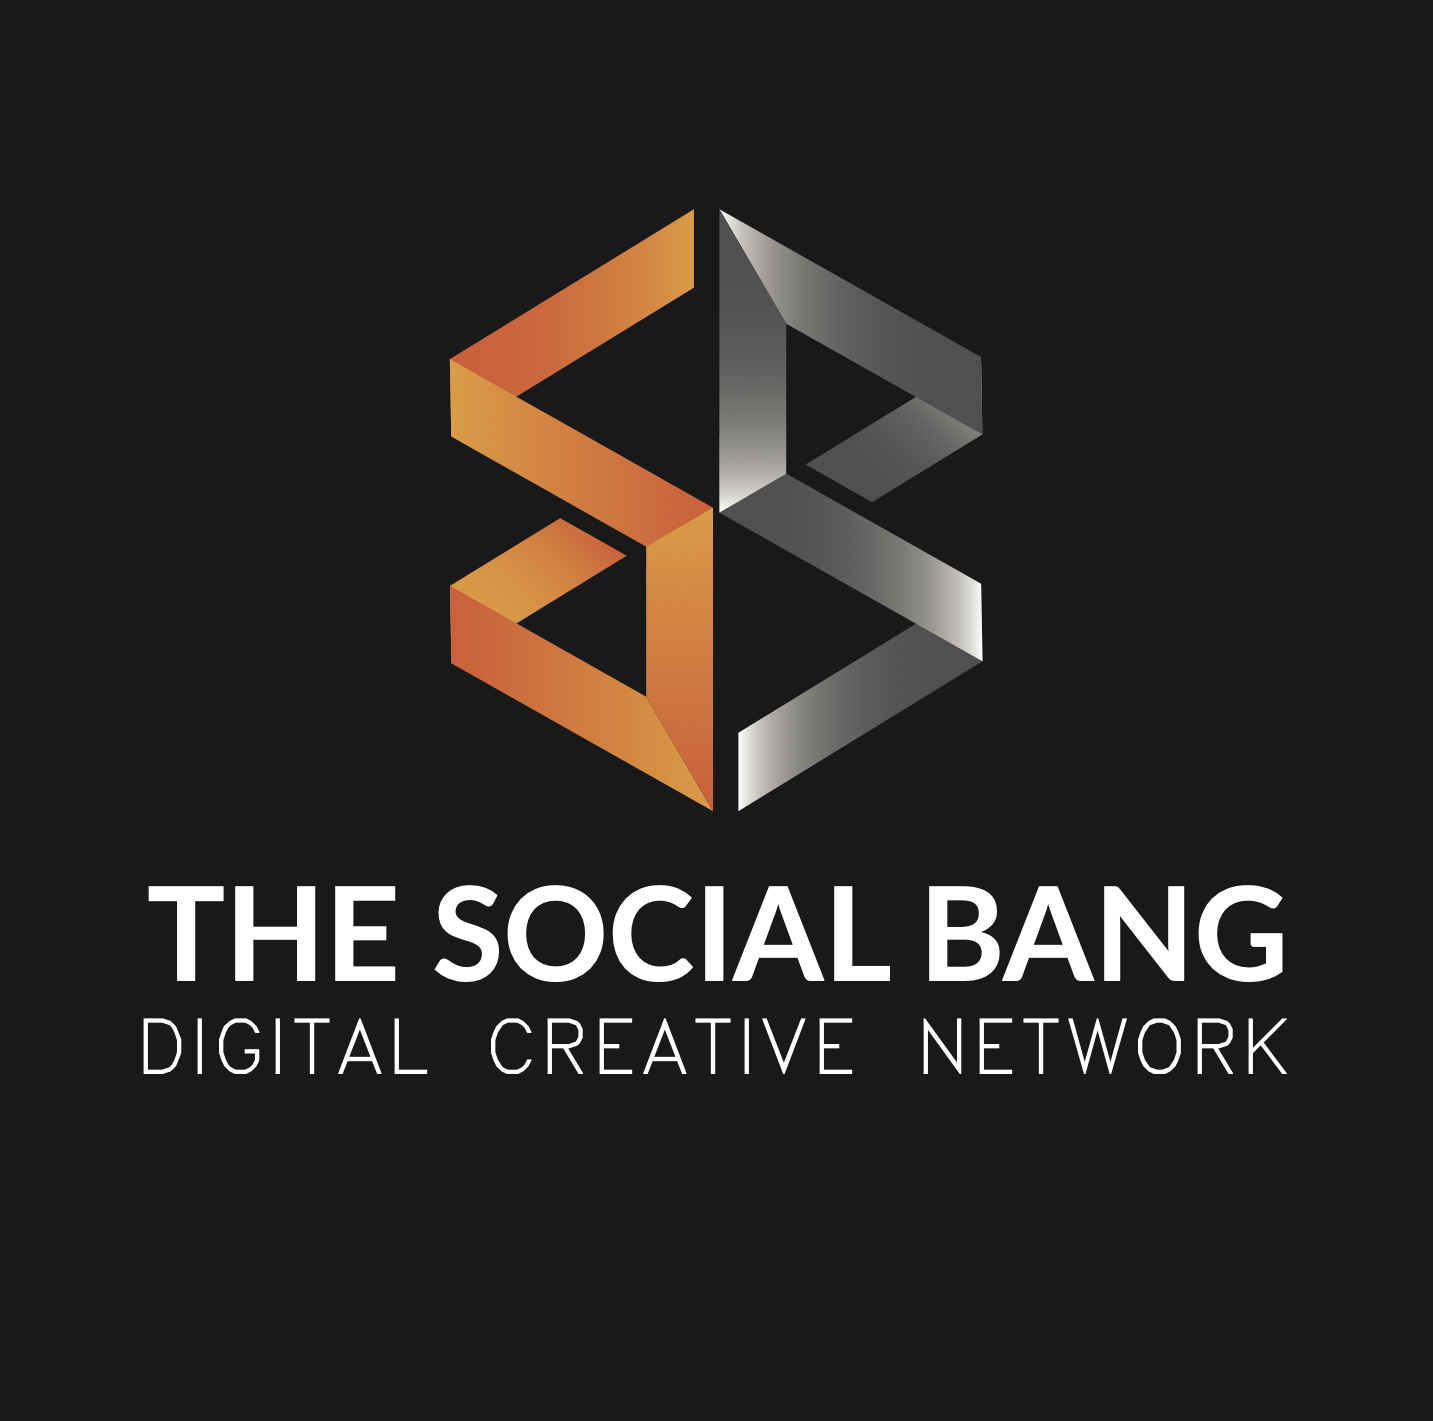 The Social Bang